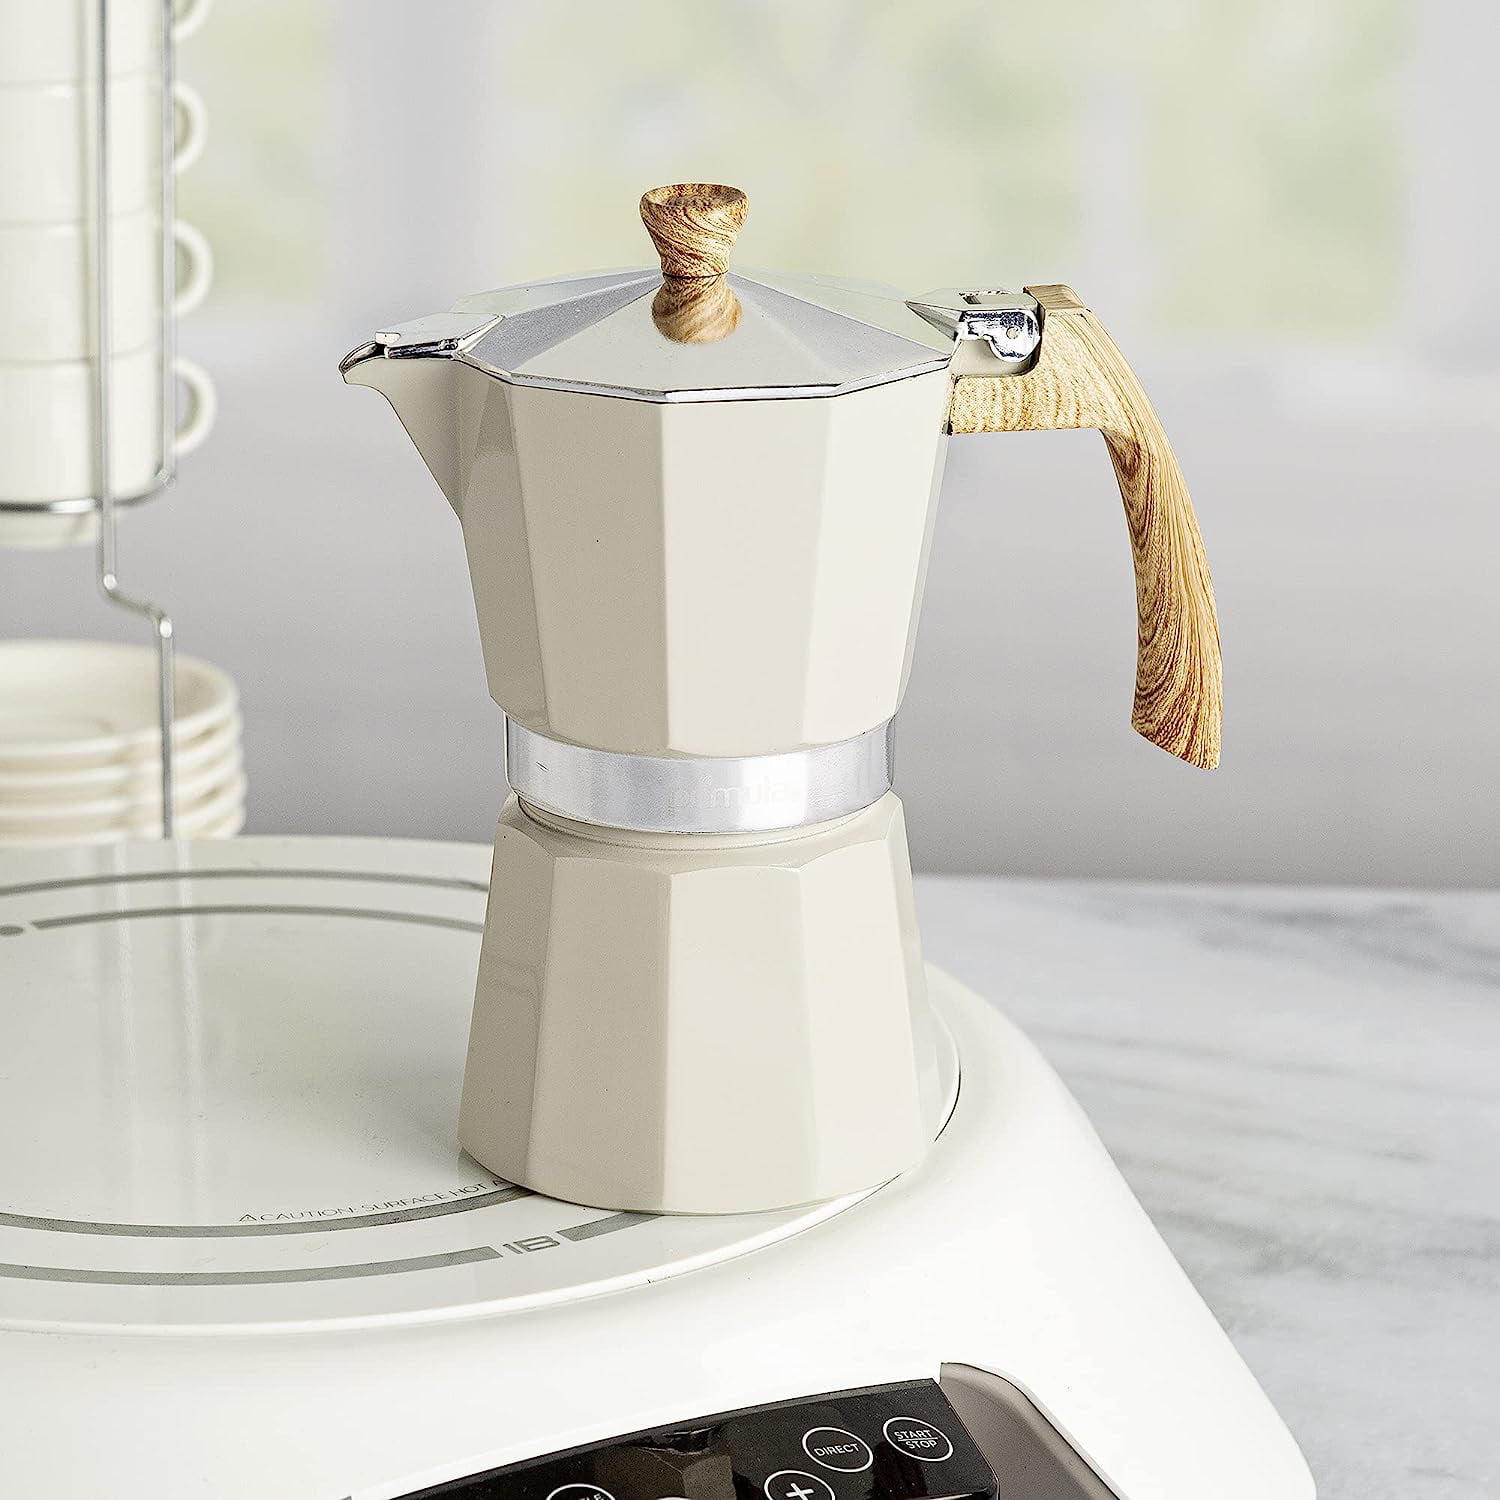 Making a delicious iced latte using Primula Stovetop Espresso Maker! ☕, Bialetti  Espresso